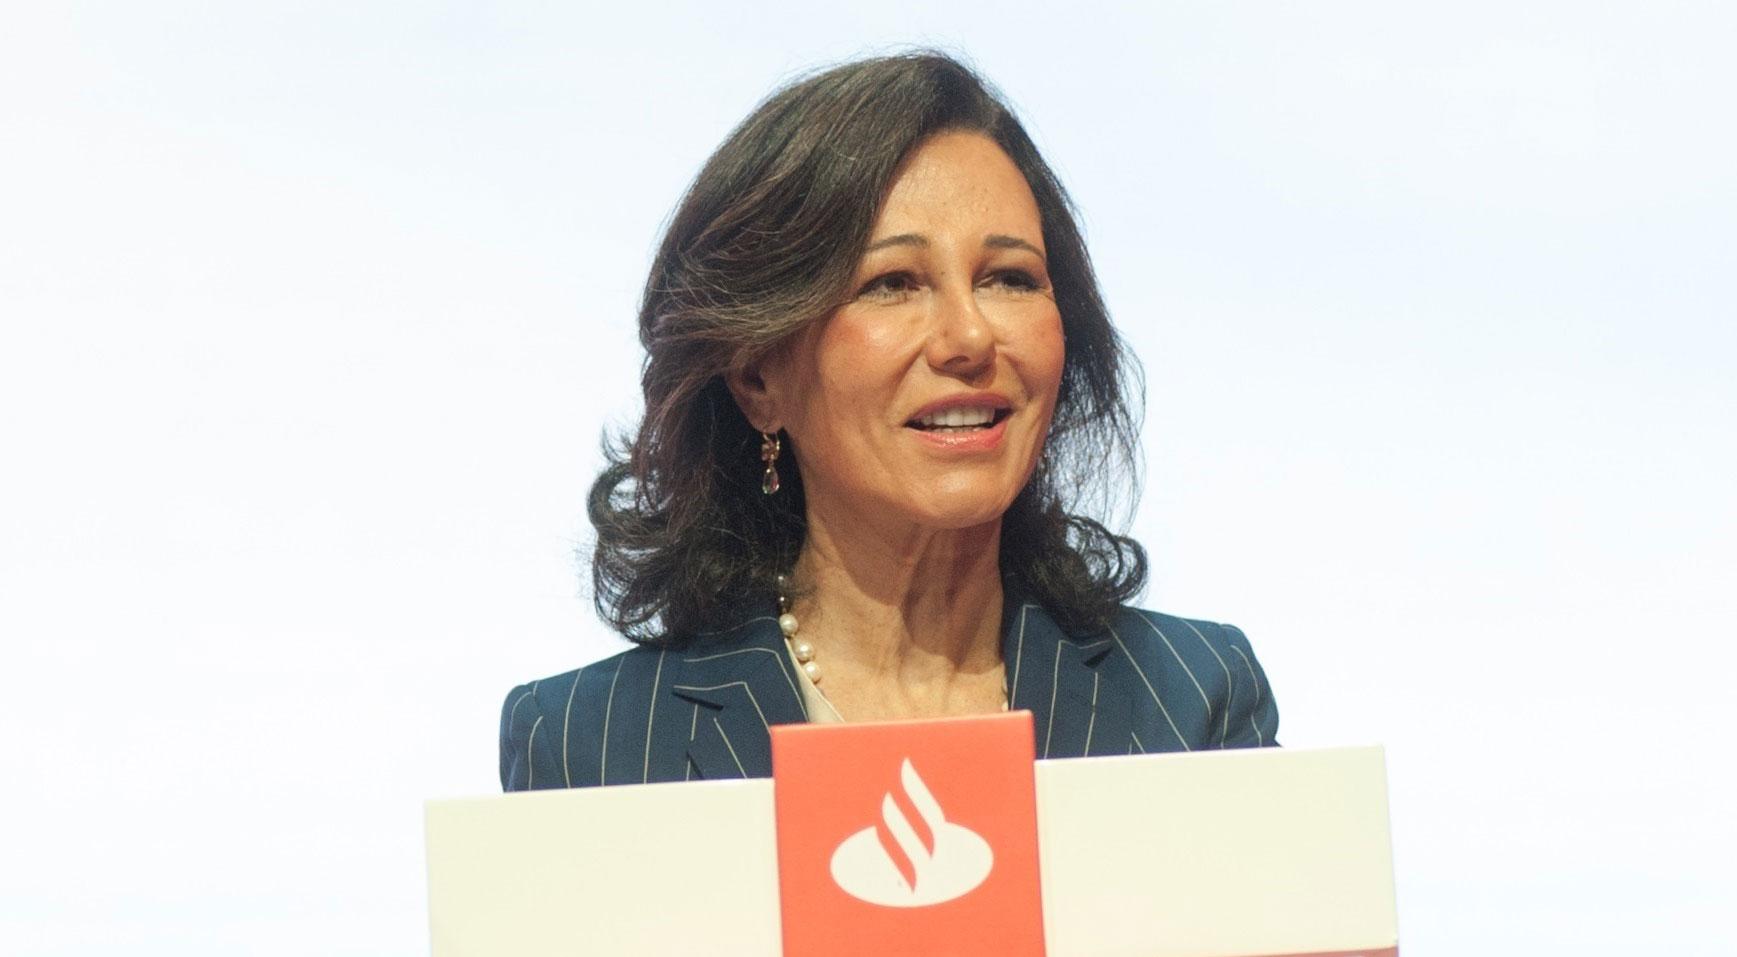 La presidenta de Banco Santander, Ana Botín, en una imagen de archivo (Foto: Europa Press)